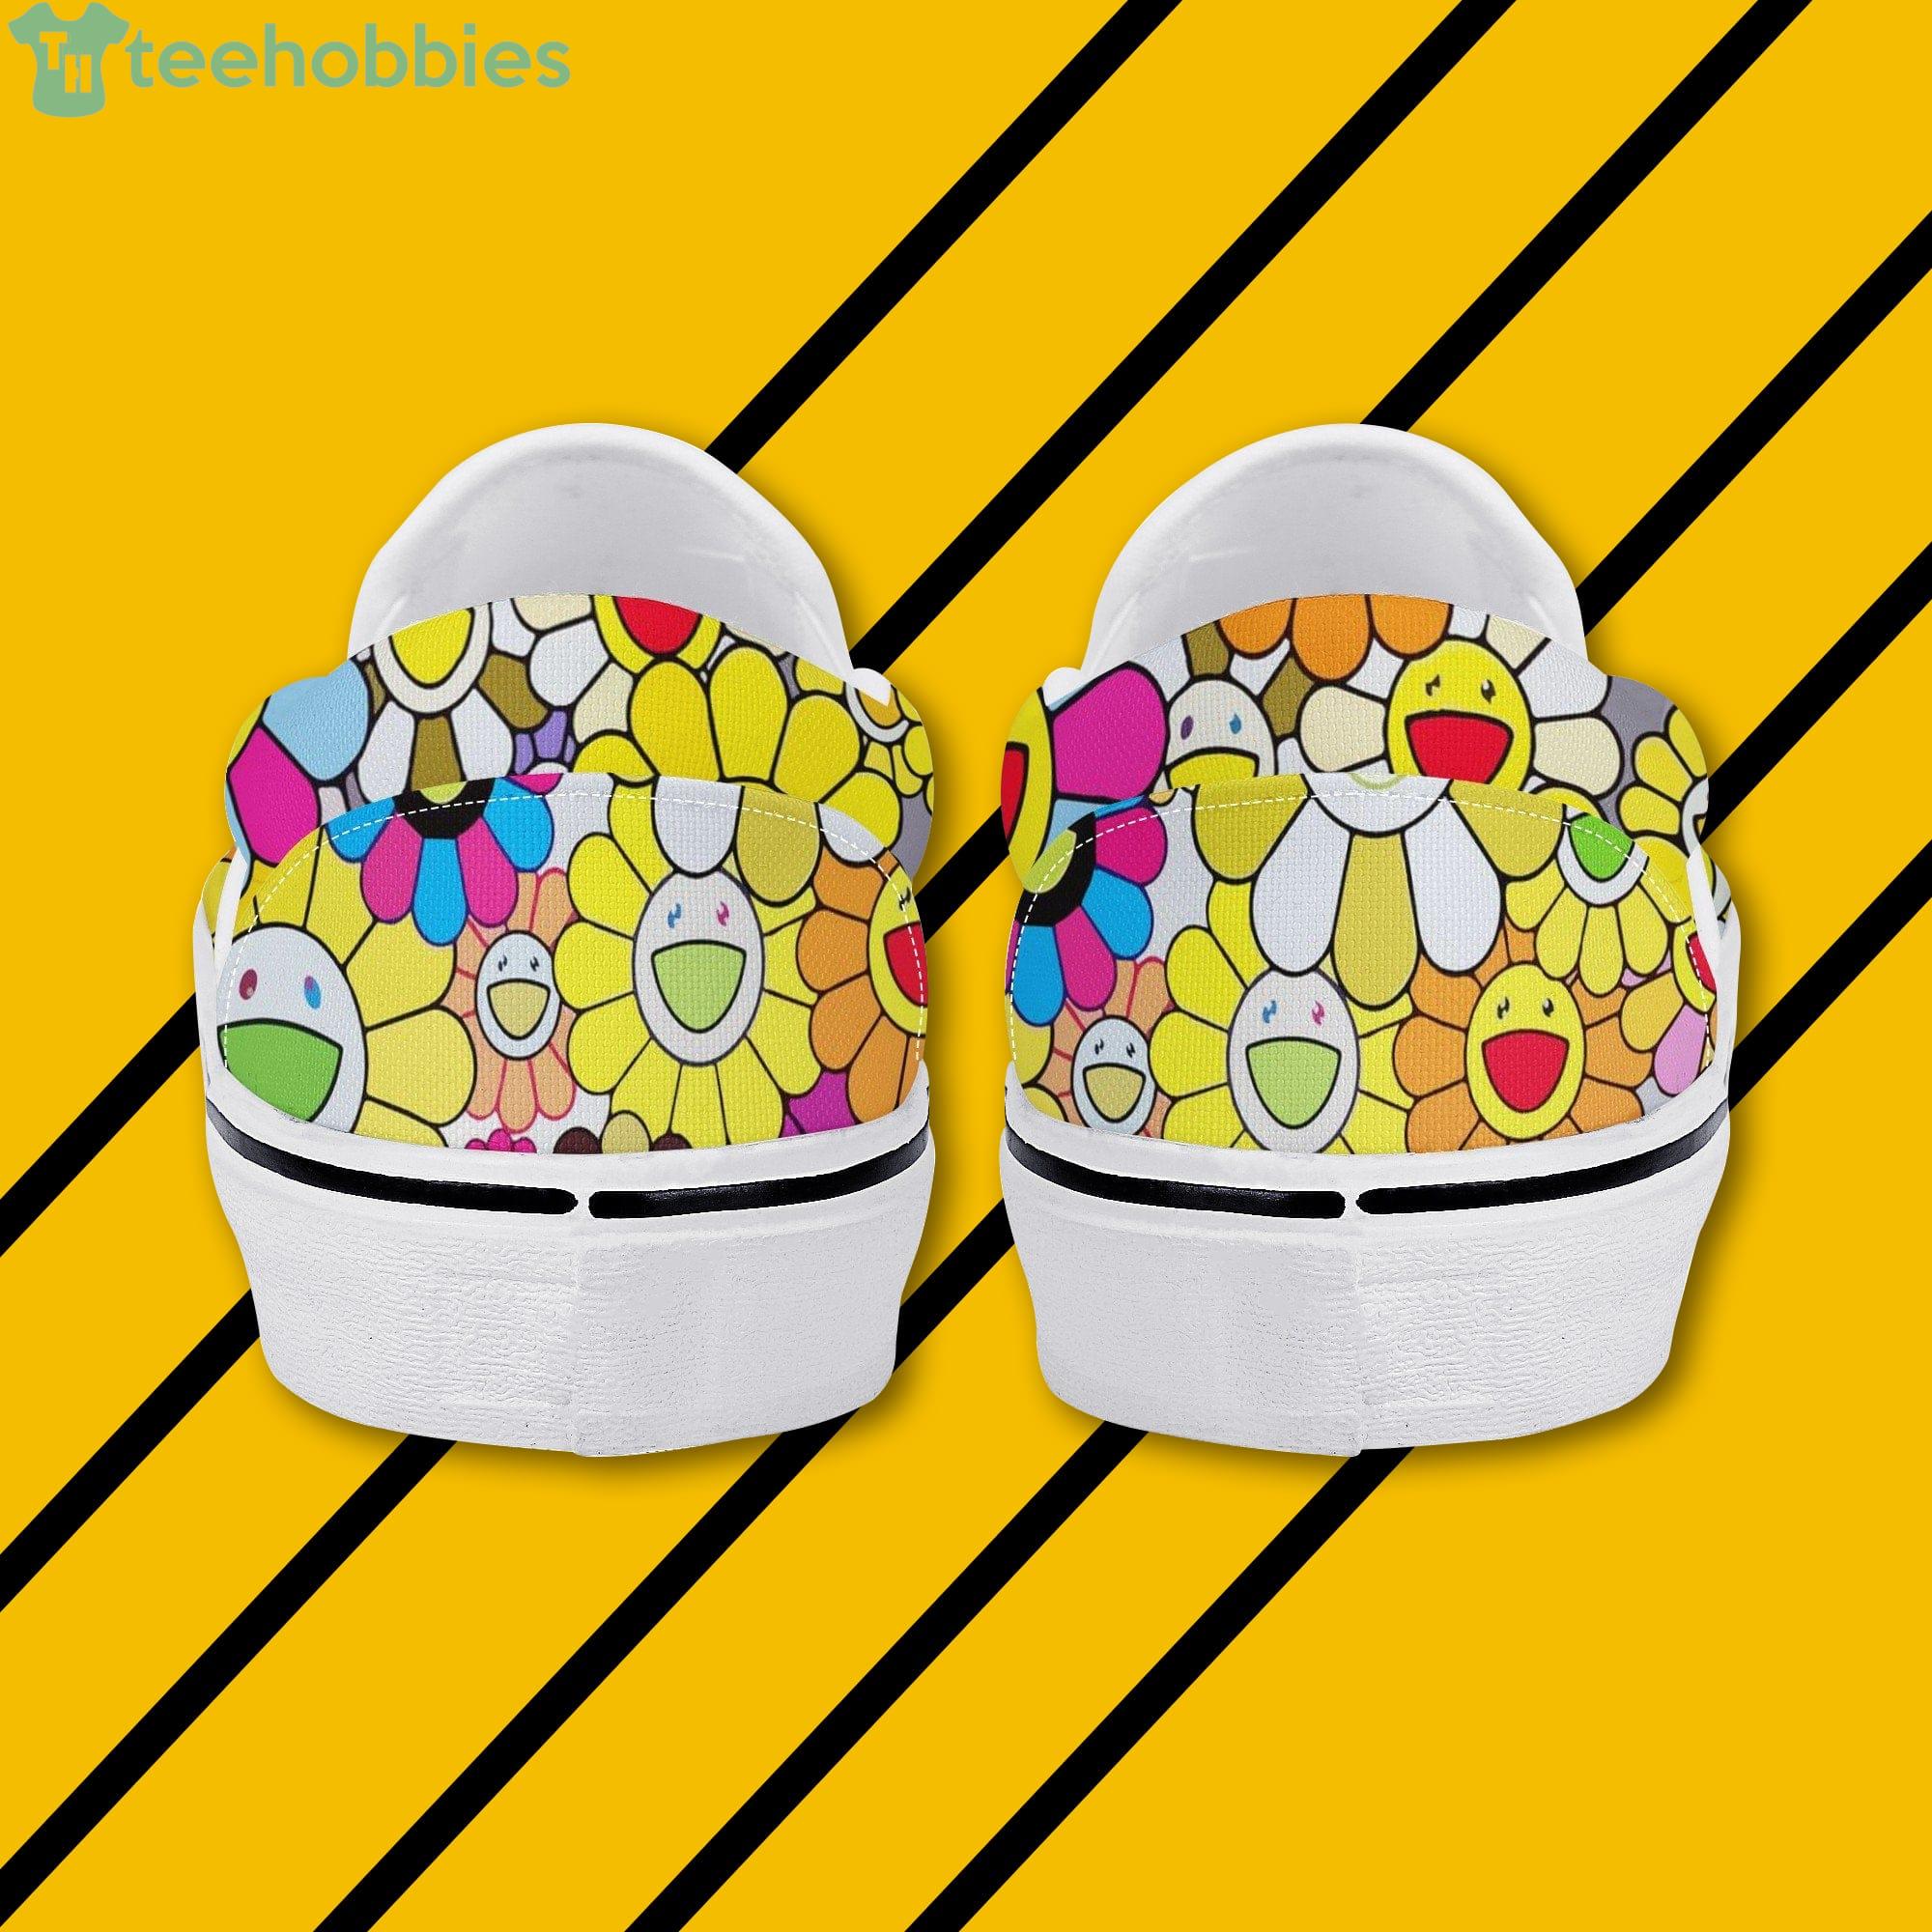 Takashi Murakami Rainbow Flower Sneakers - Custom Slip Ons